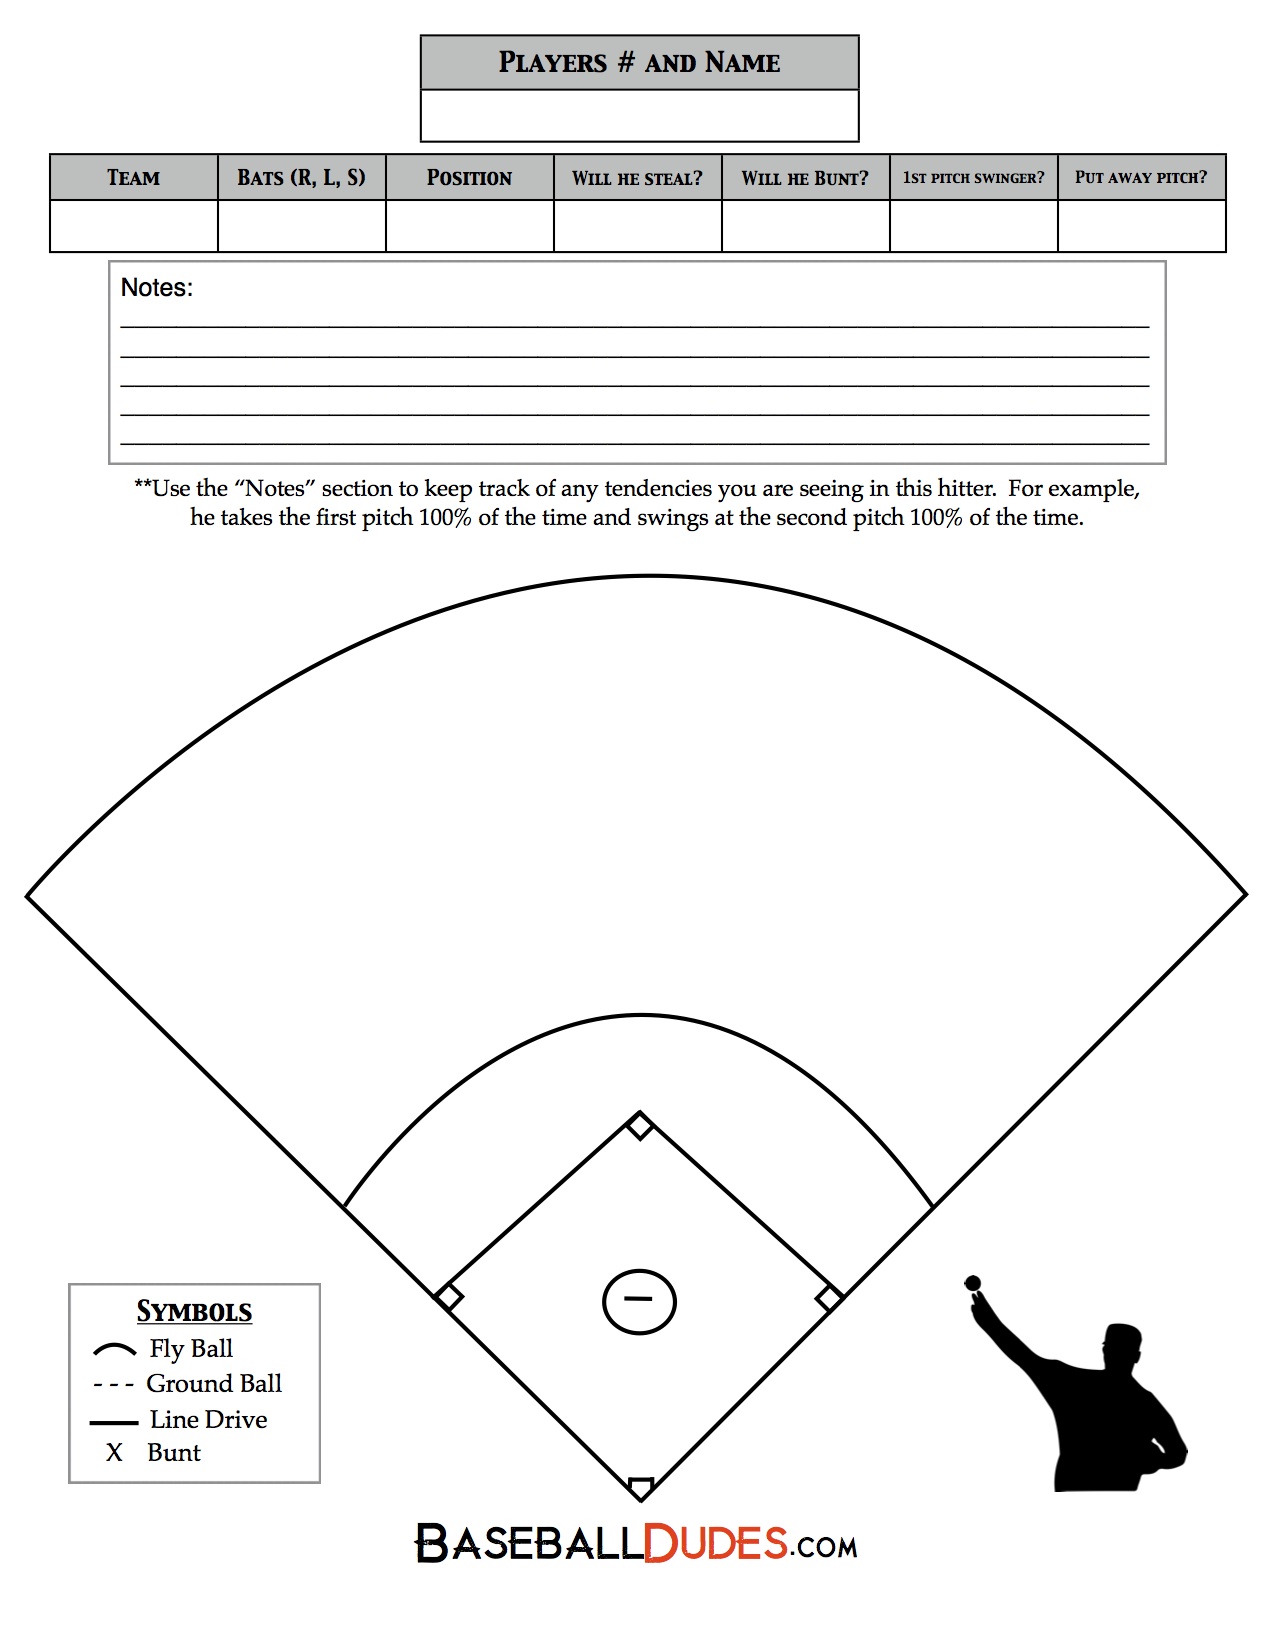 hier-is-wat-we-hebben-baseball-dudes-llc-tech-blog